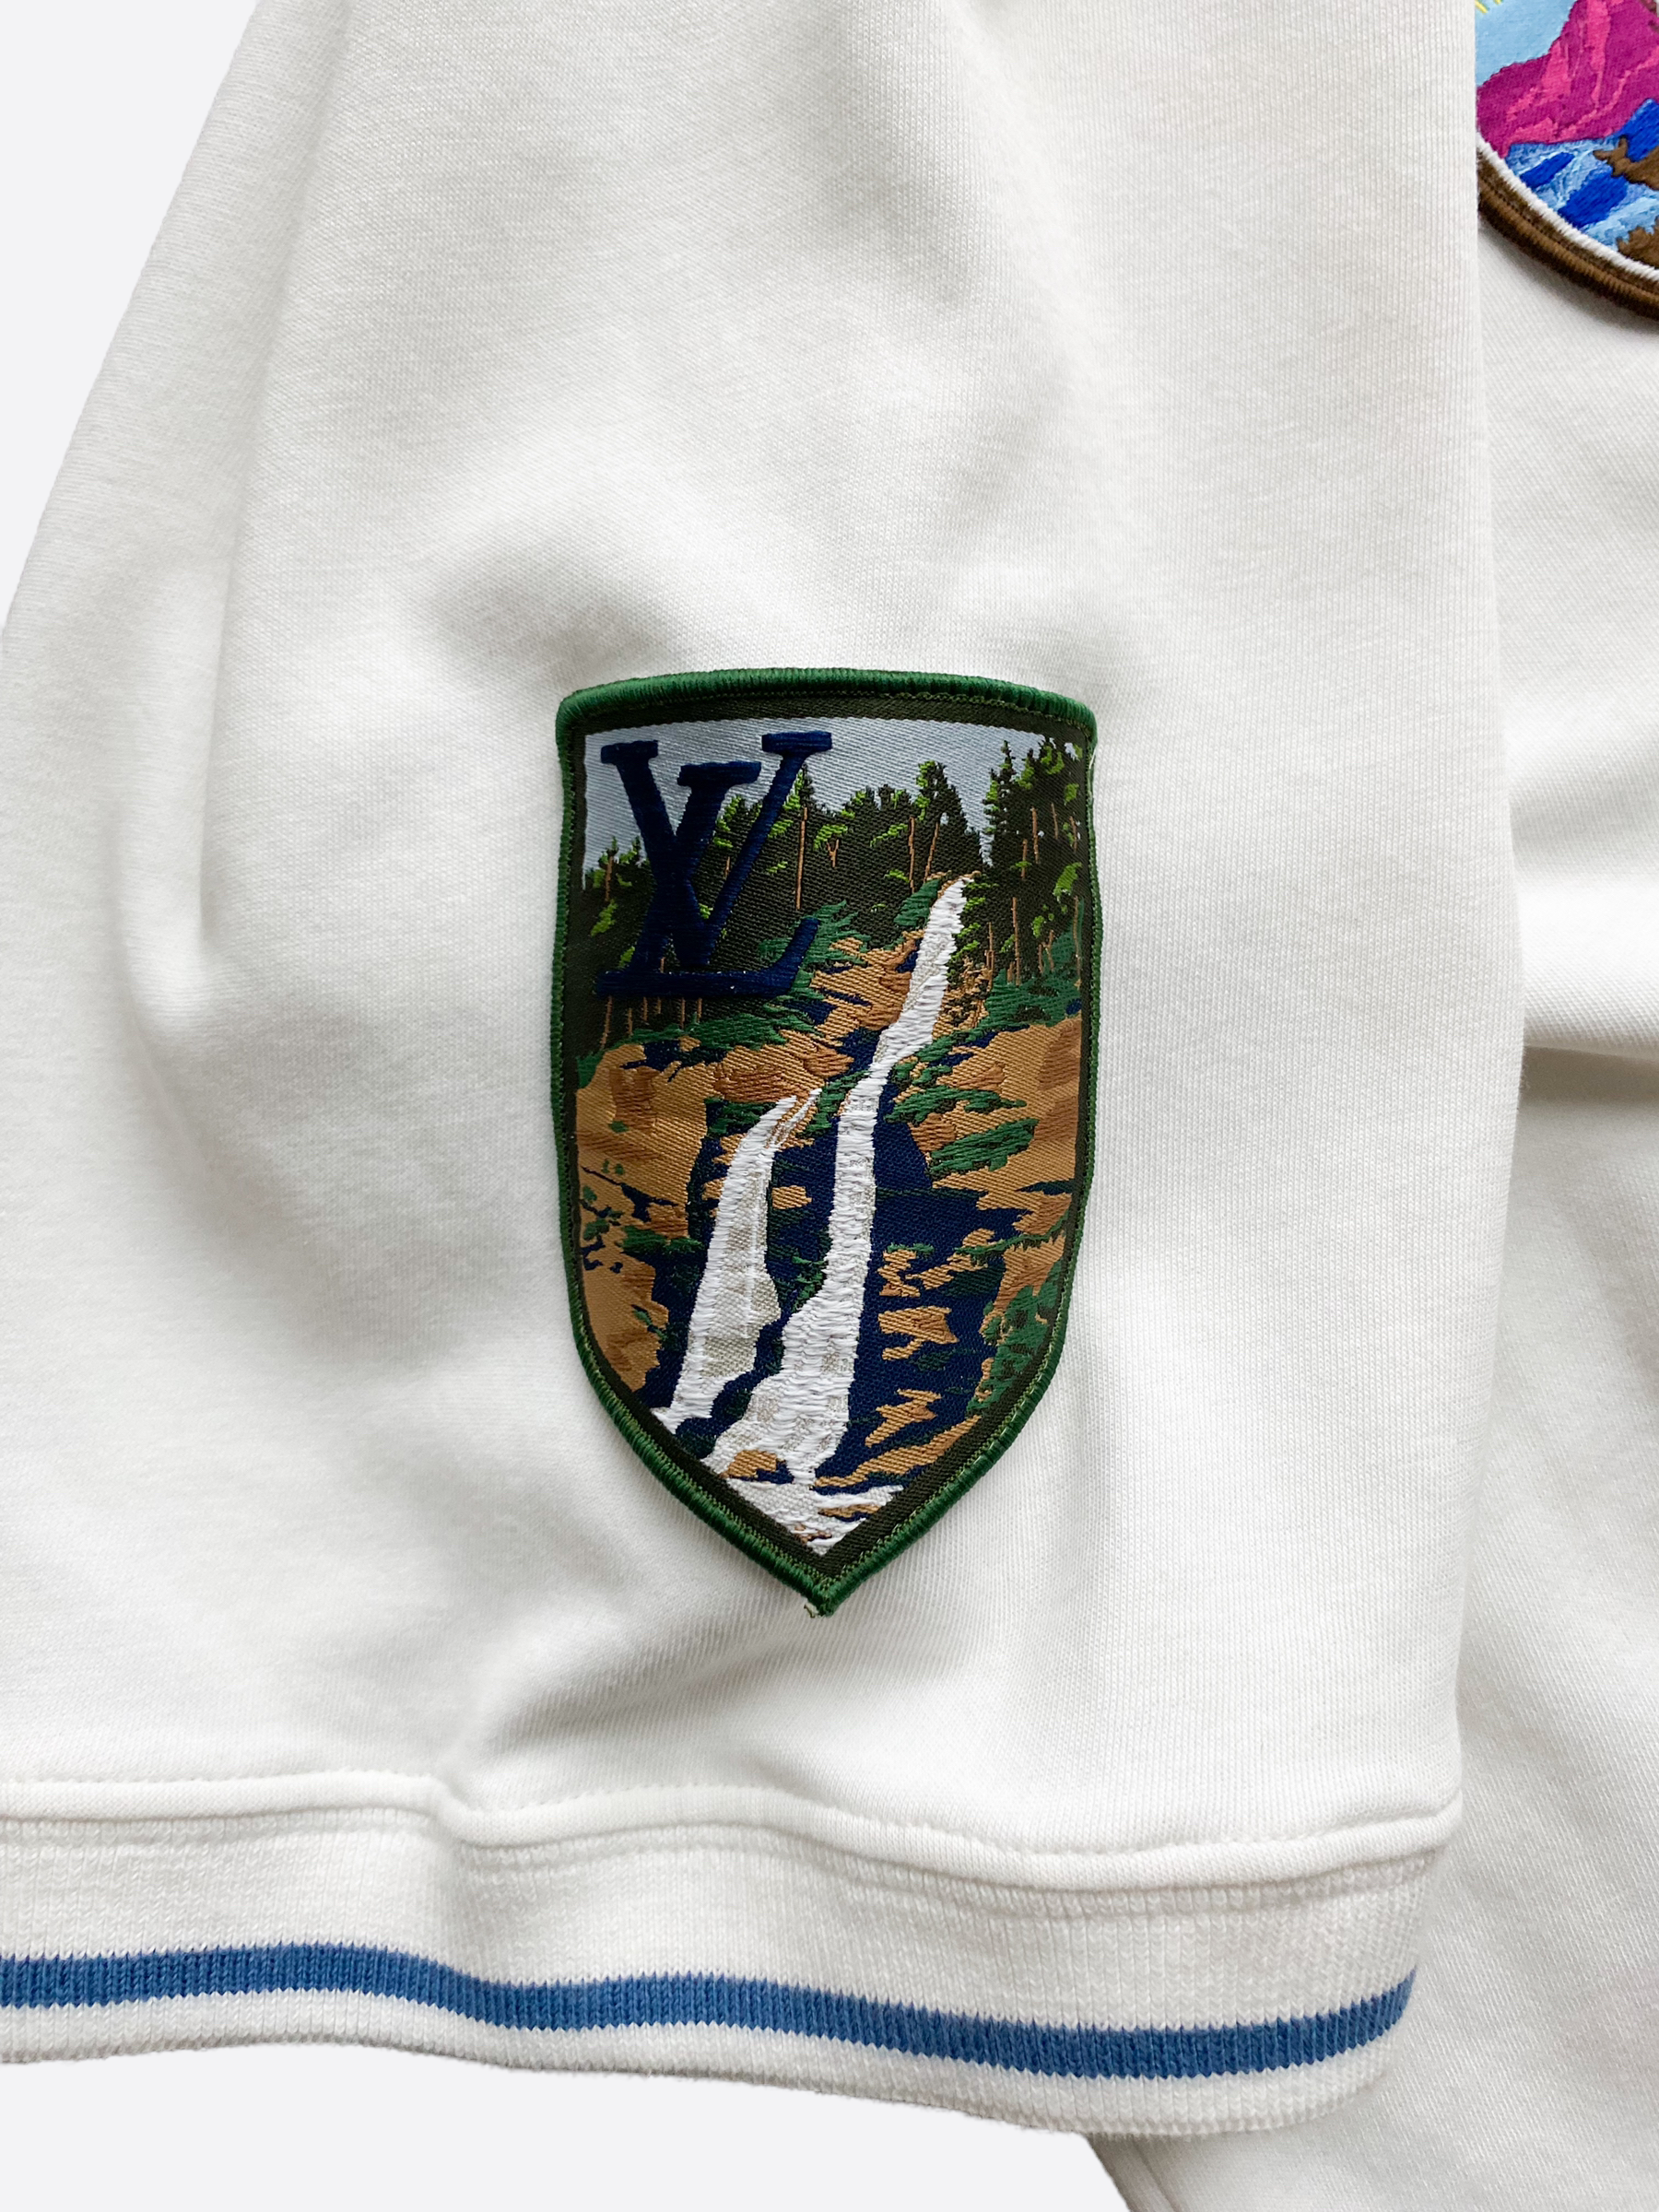 Louis Vuitton White Cotton National Parks Patch Applique T-Shirt